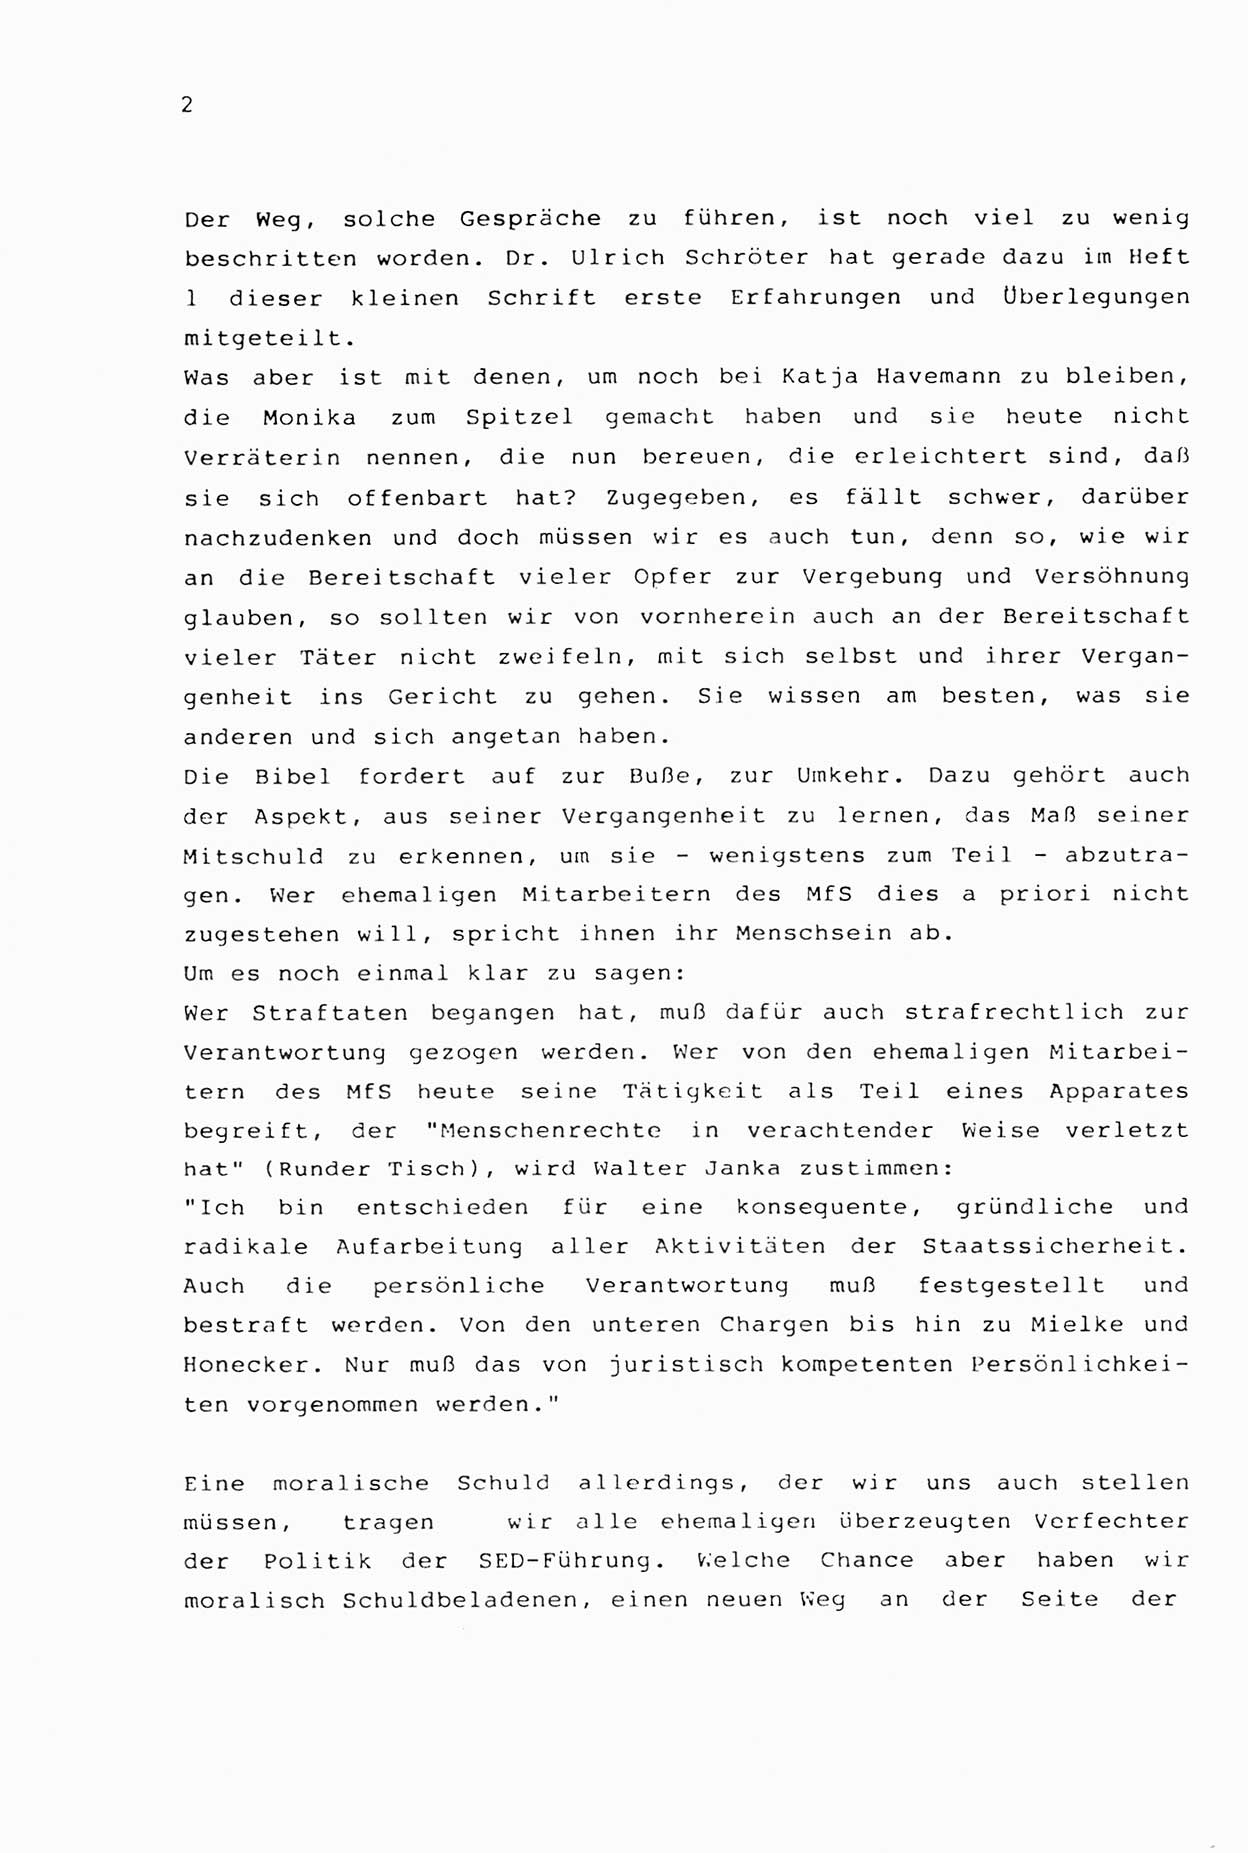 Zwie-Gespräch, Beiträge zur Aufarbeitung der Stasi-Vergangenheit [Deutsche Demokratische Republik (DDR)], Ausgabe Nr. 2, Berlin 1991, Seite 2 (Zwie-Gespr. Ausg. 2 1991, S. 2)